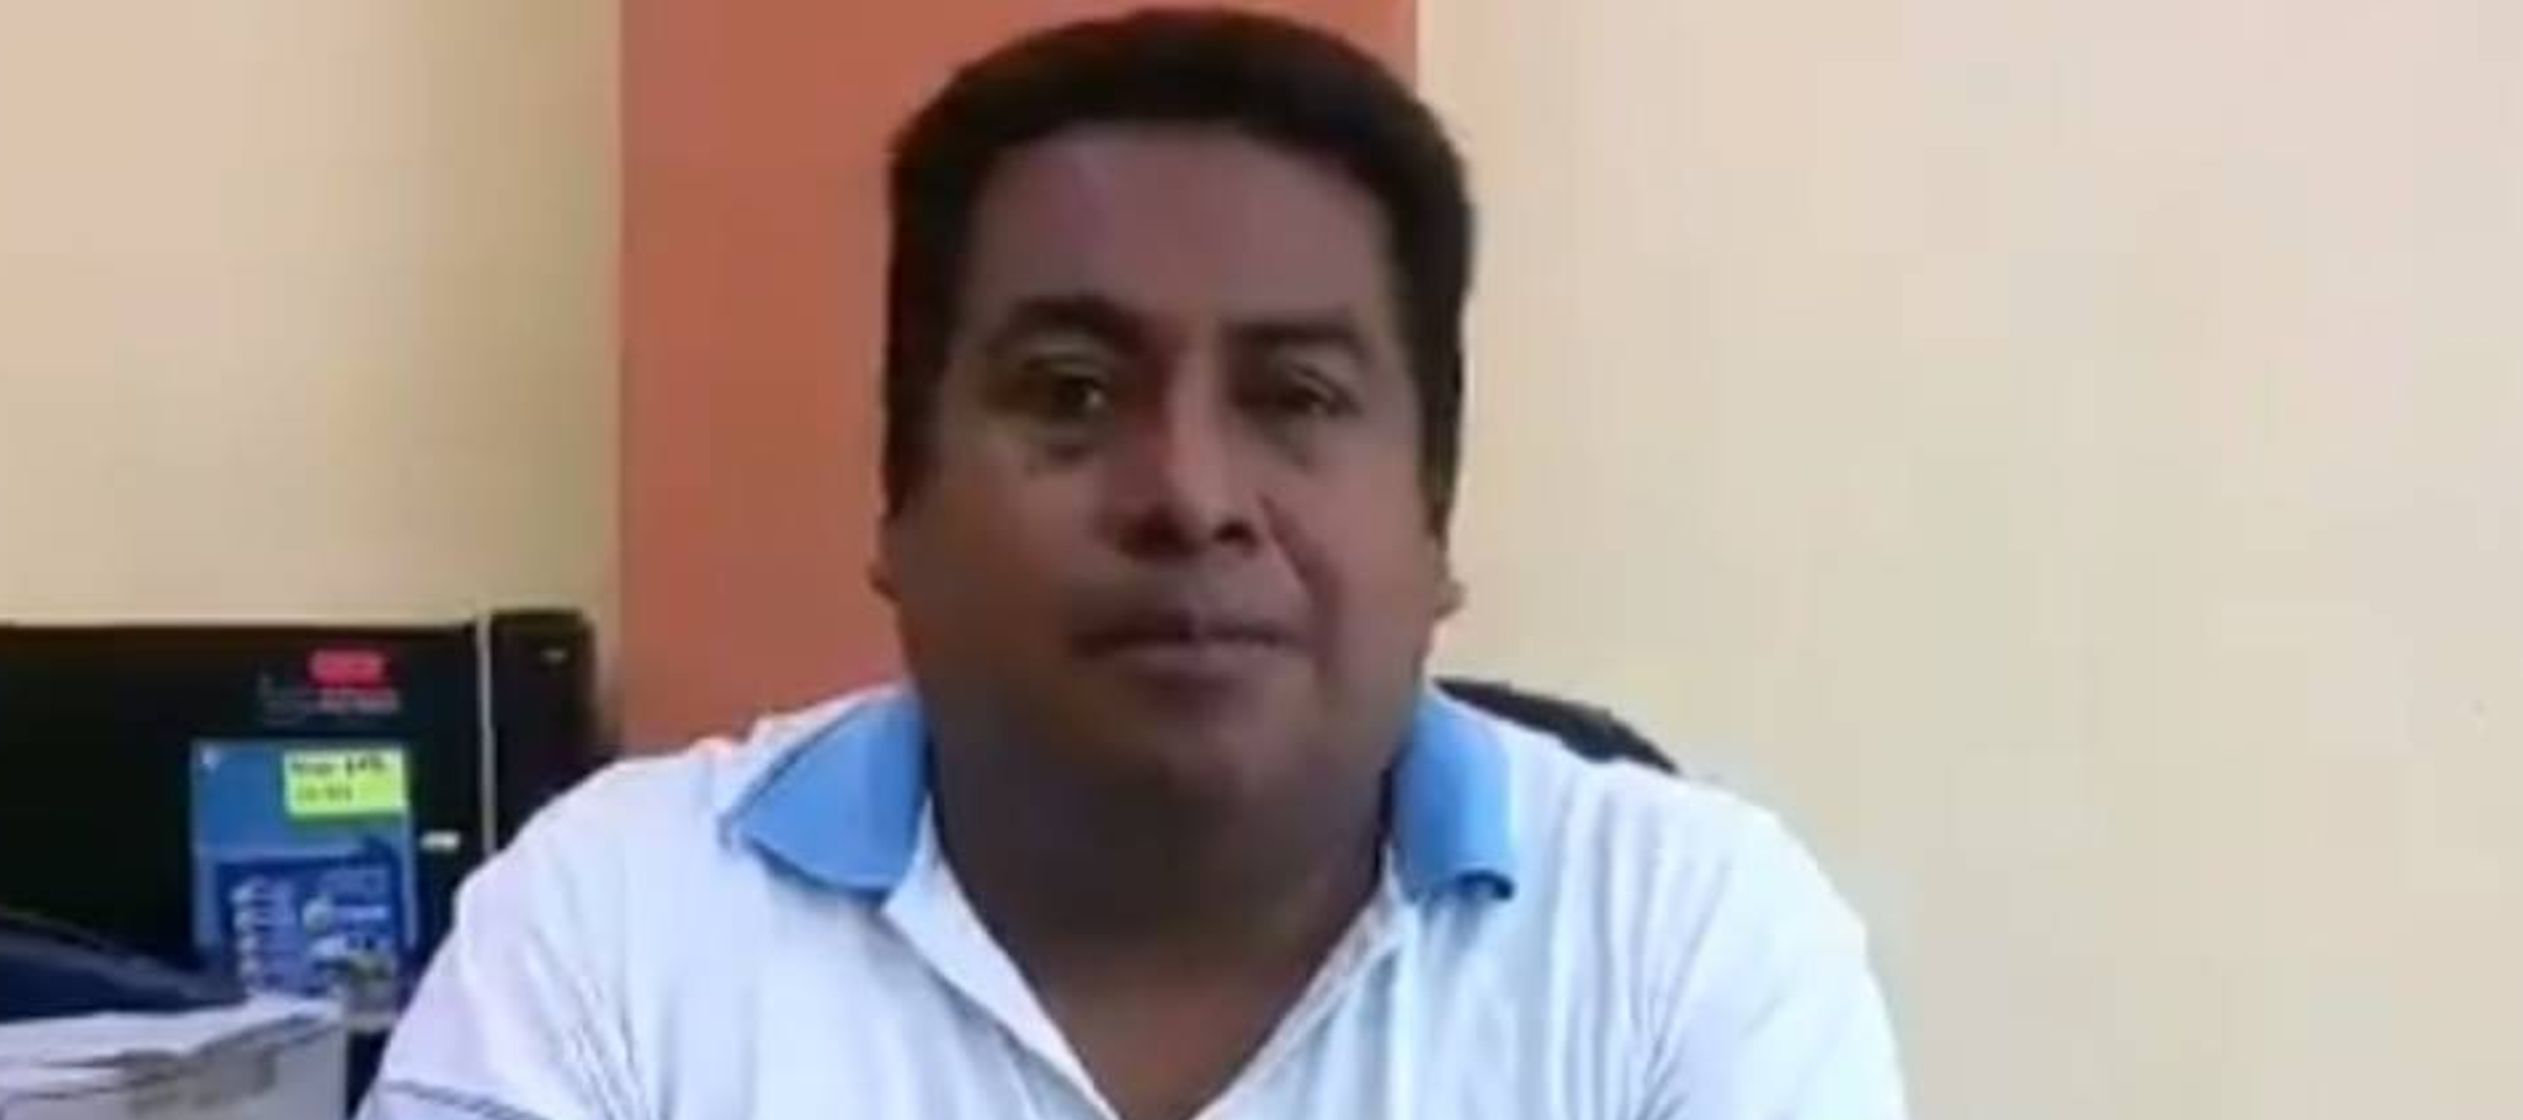 Las autoridades locales han detenido al presunto narcomenudista, Juan Pablo N. Este hombre,...